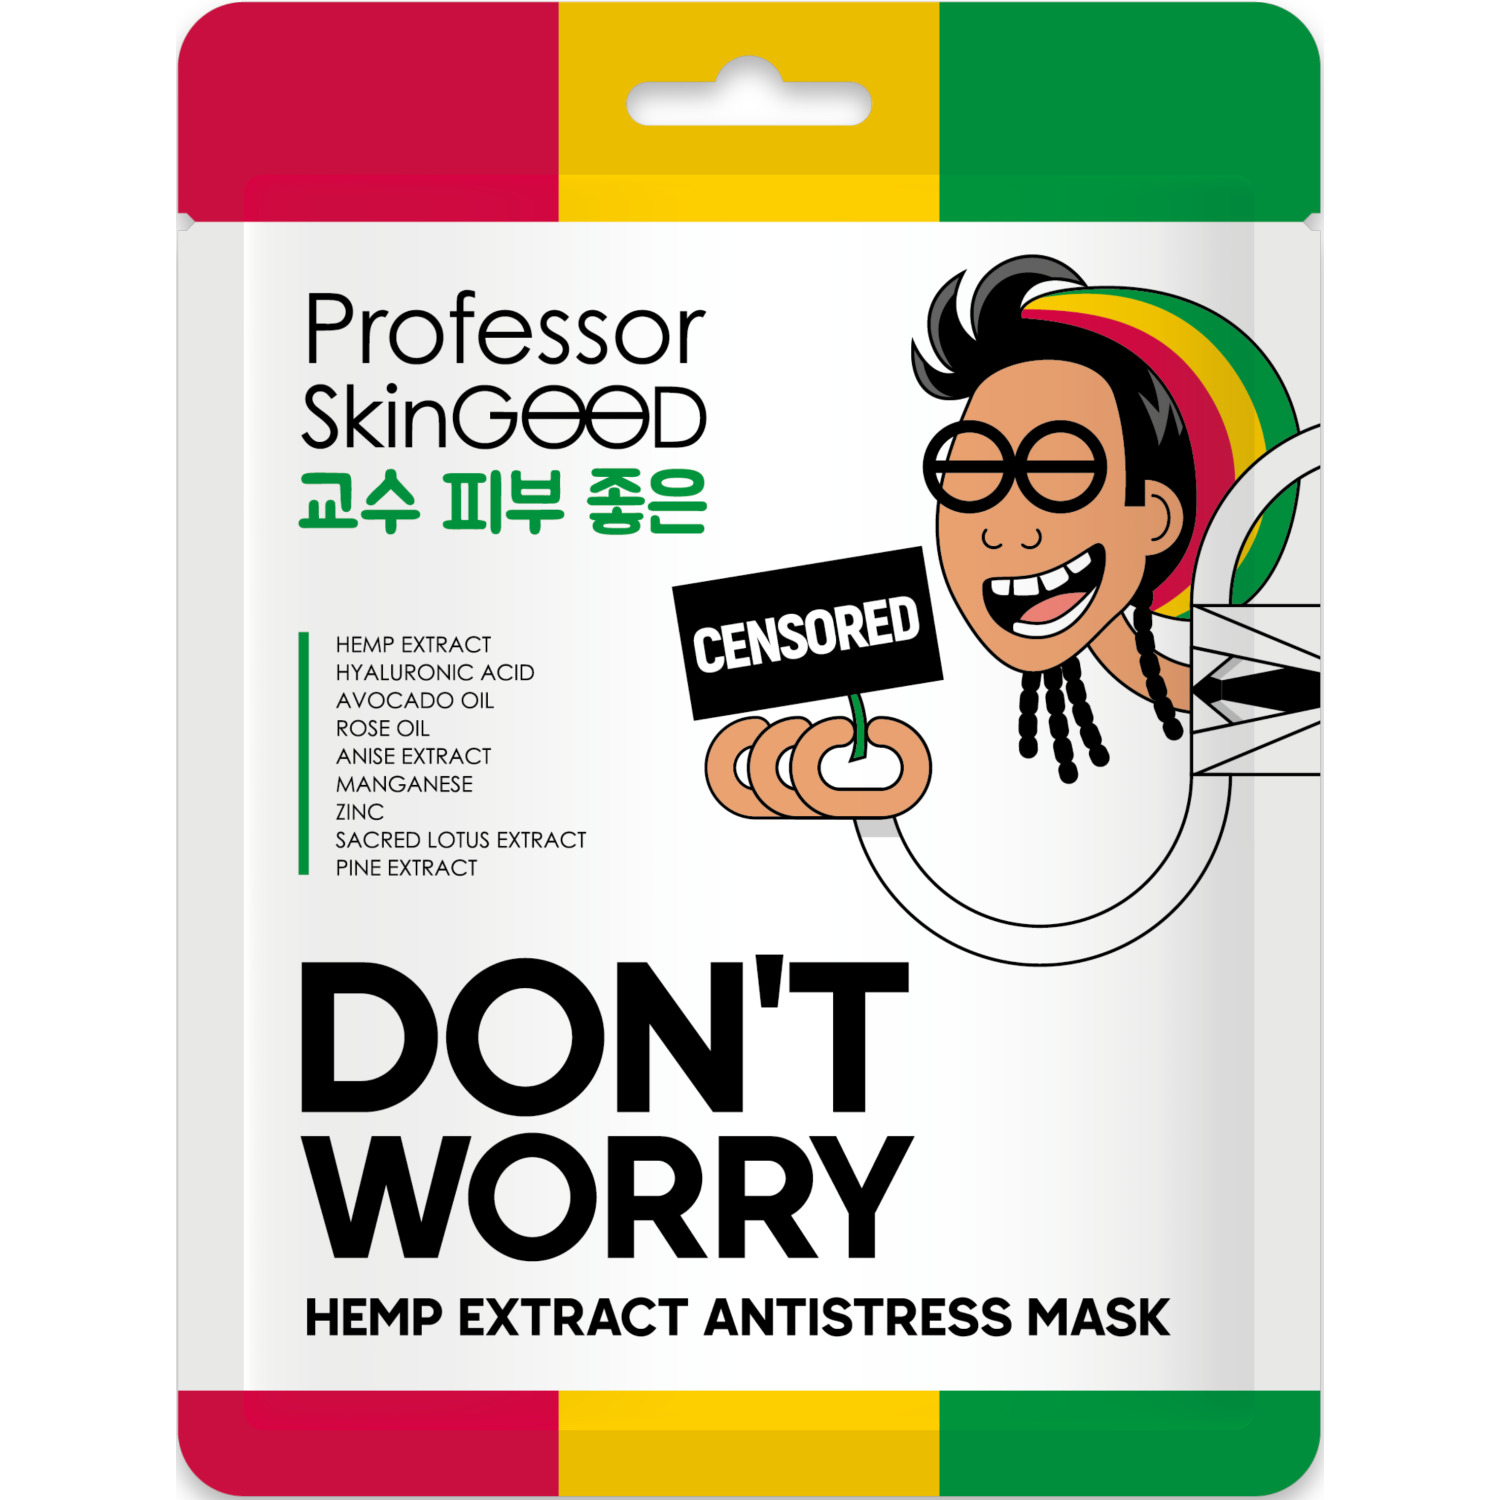 Маска для лица Professor SkinGOOD Hemp Extract Antistress Mask с экстрактом конопли, 25 мл мисс черити